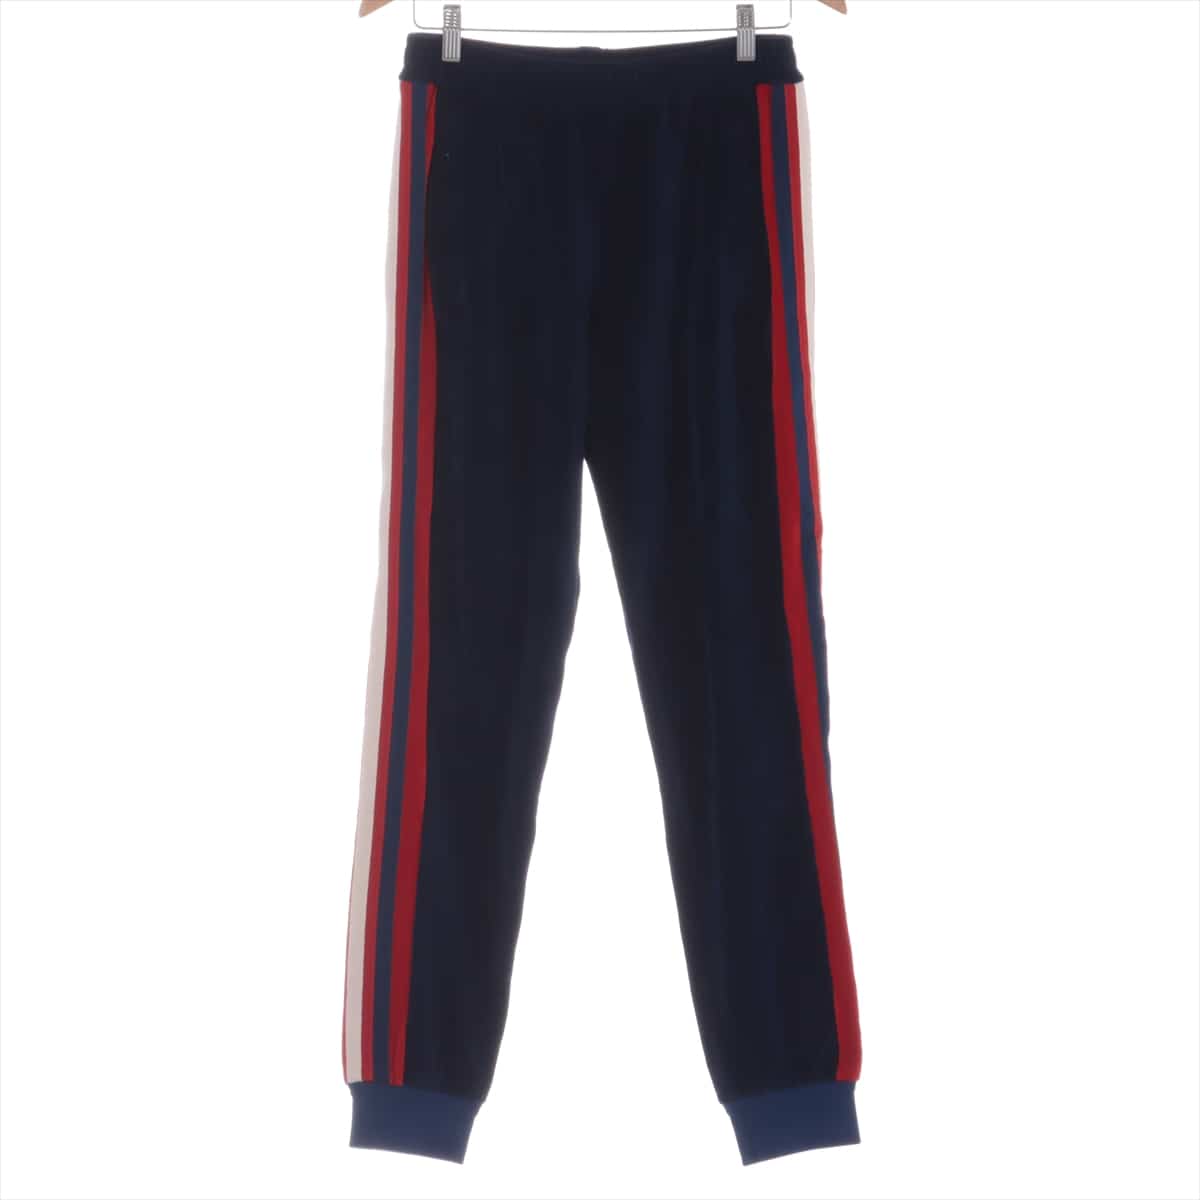 Gucci 19SS Velour Track pants S Men's Navy blue  Tricolor jogging pants